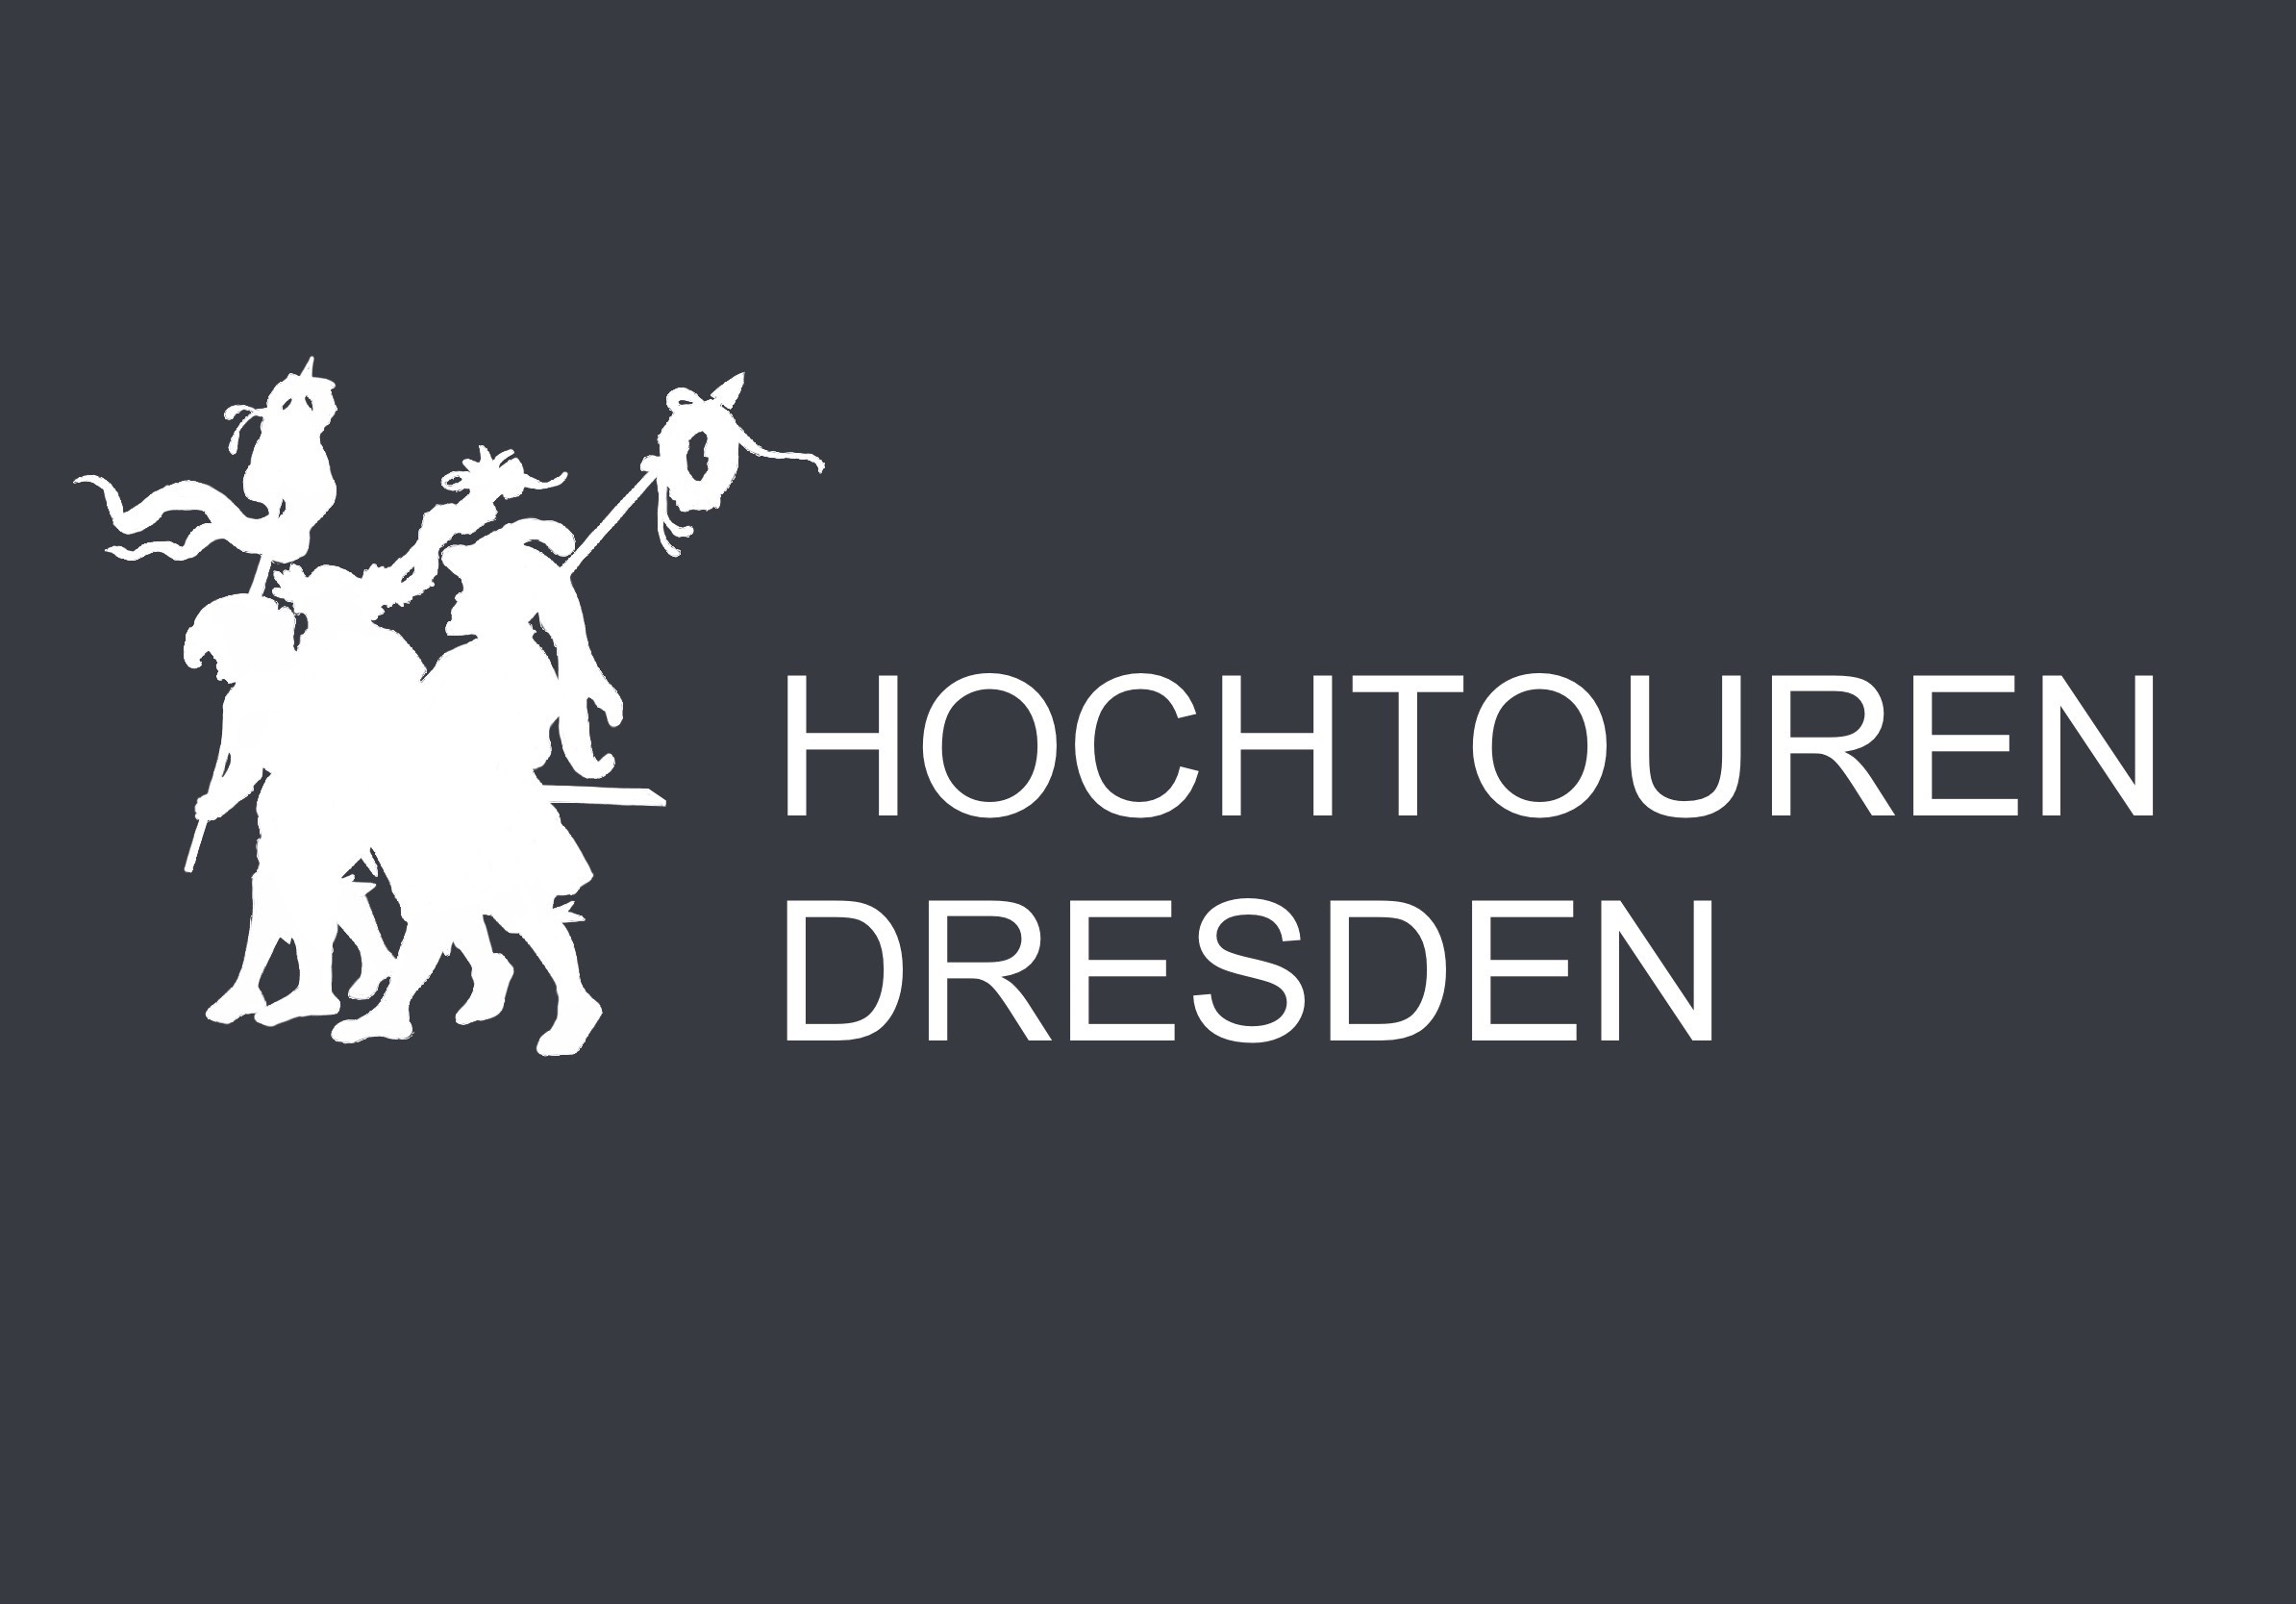 (c) Hochtouren-dresden.de